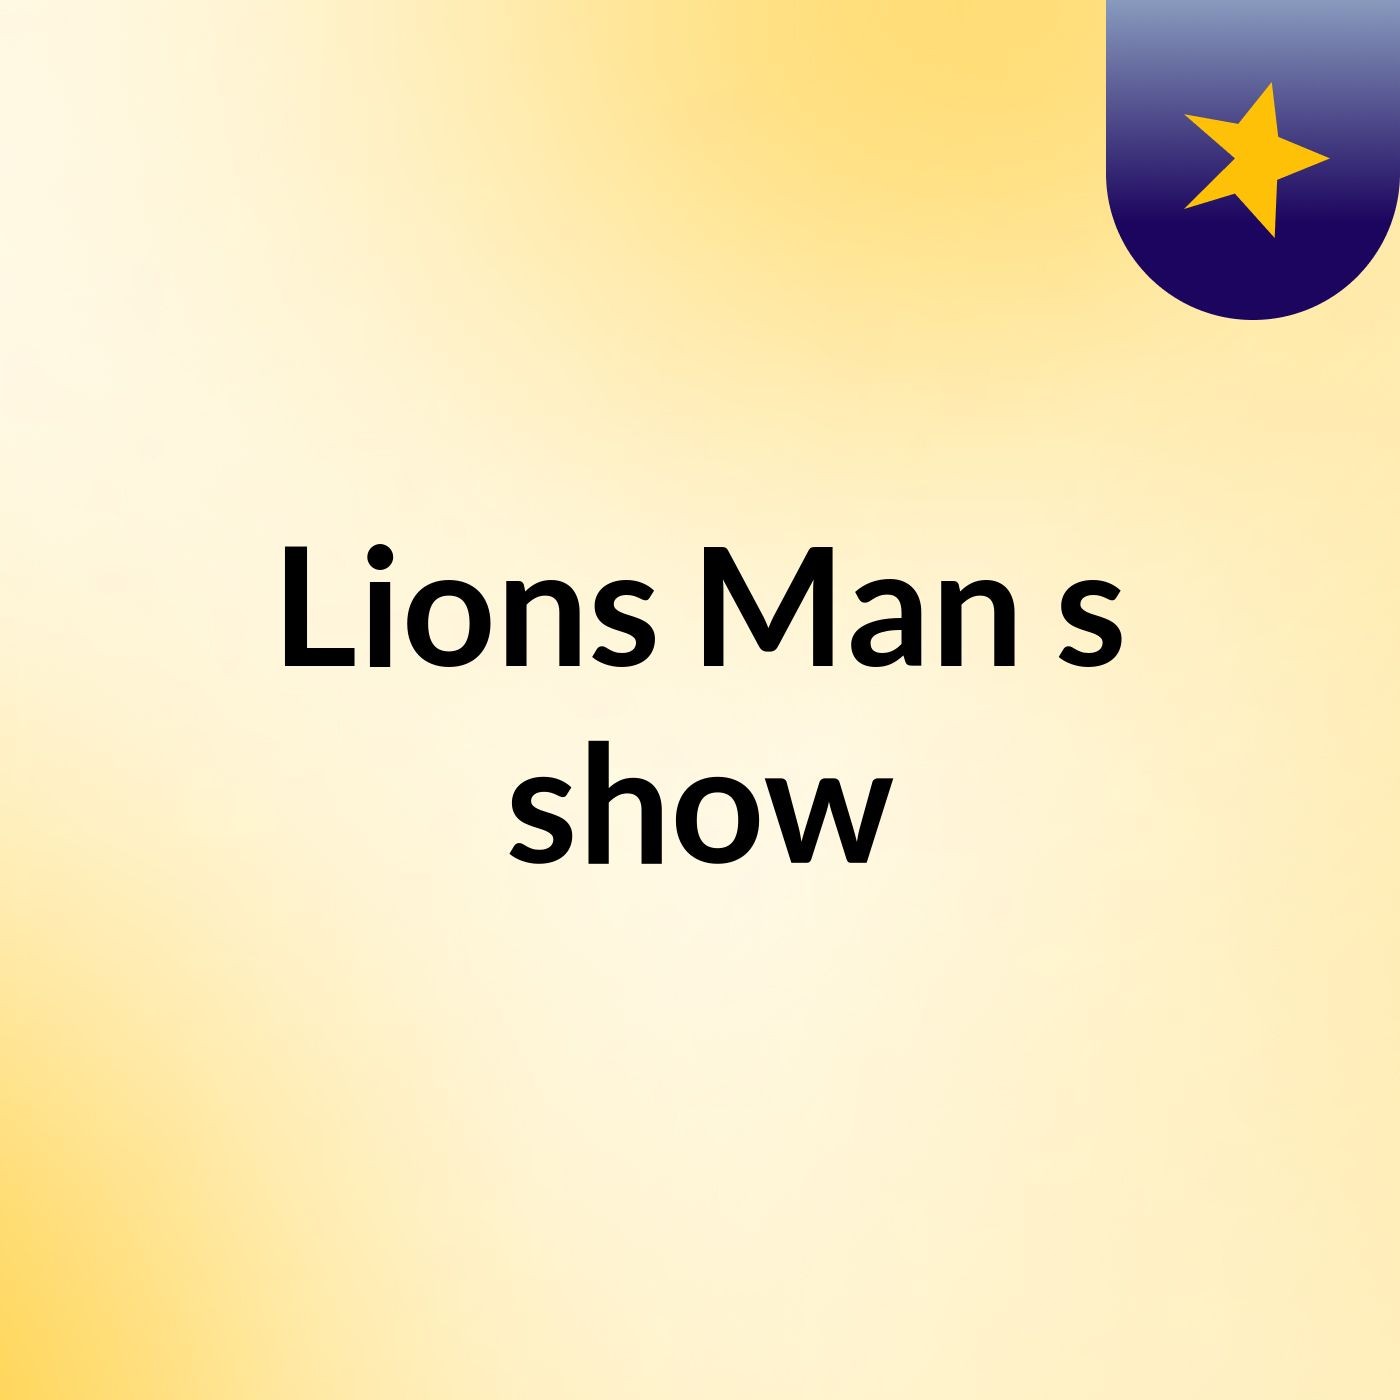 Lions Man's show